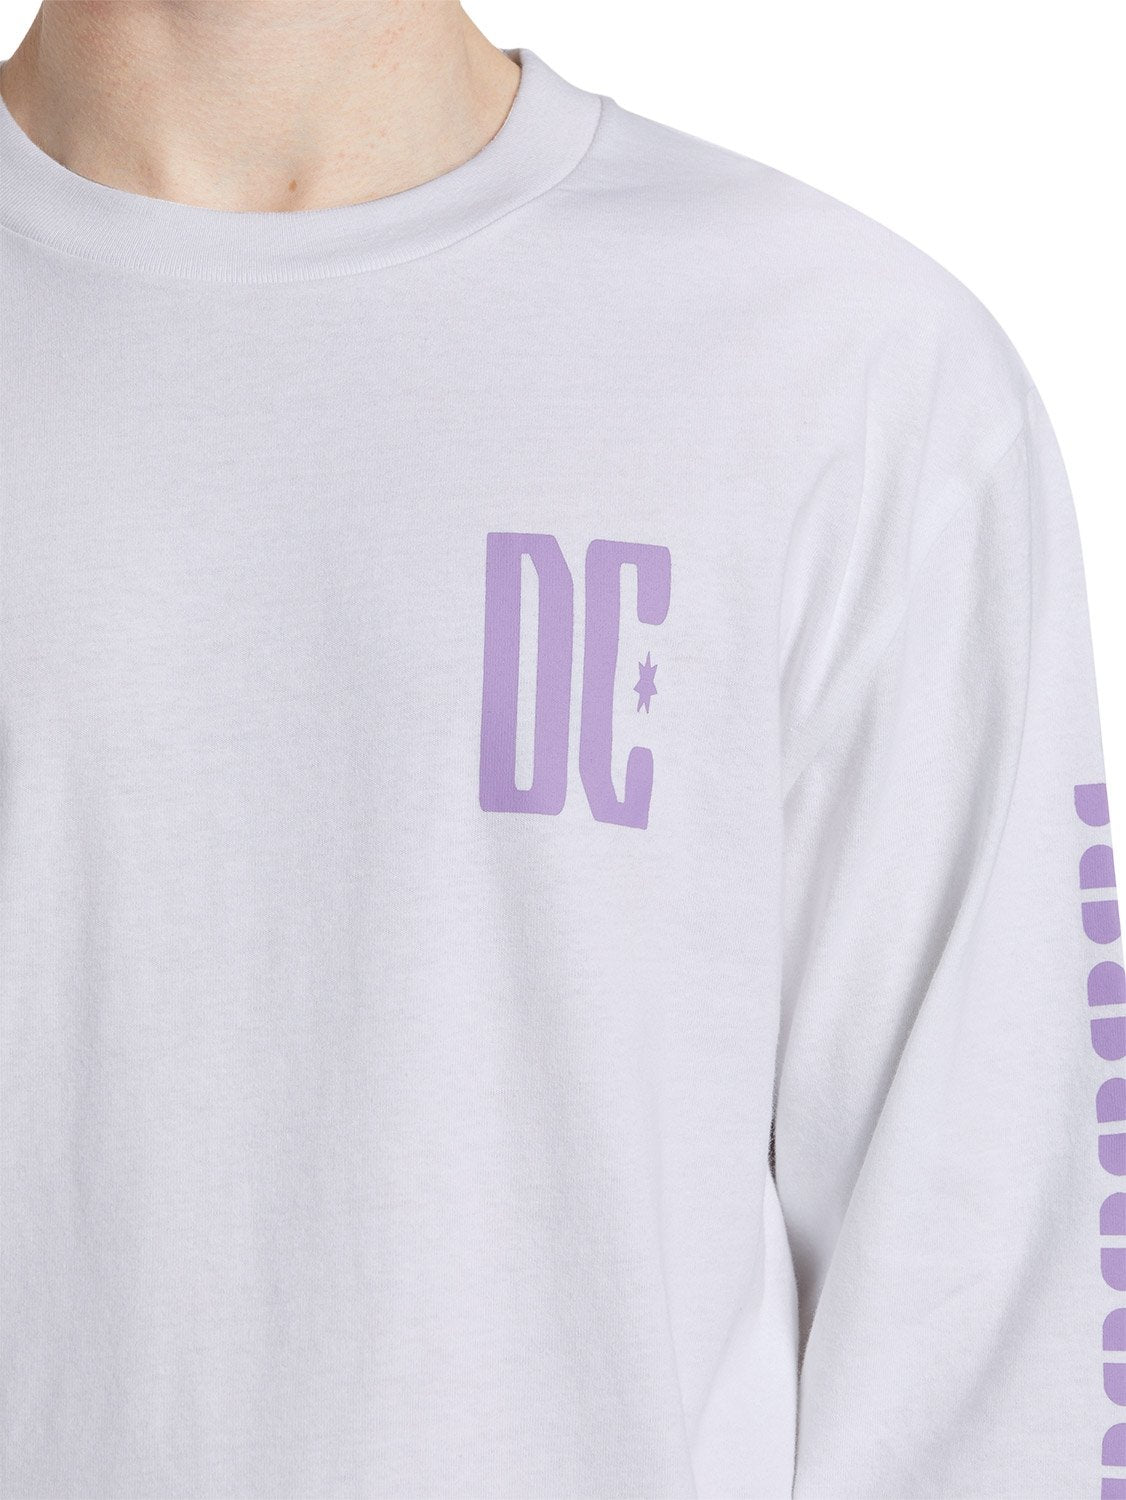 DC Men's Sportster T-Shirt